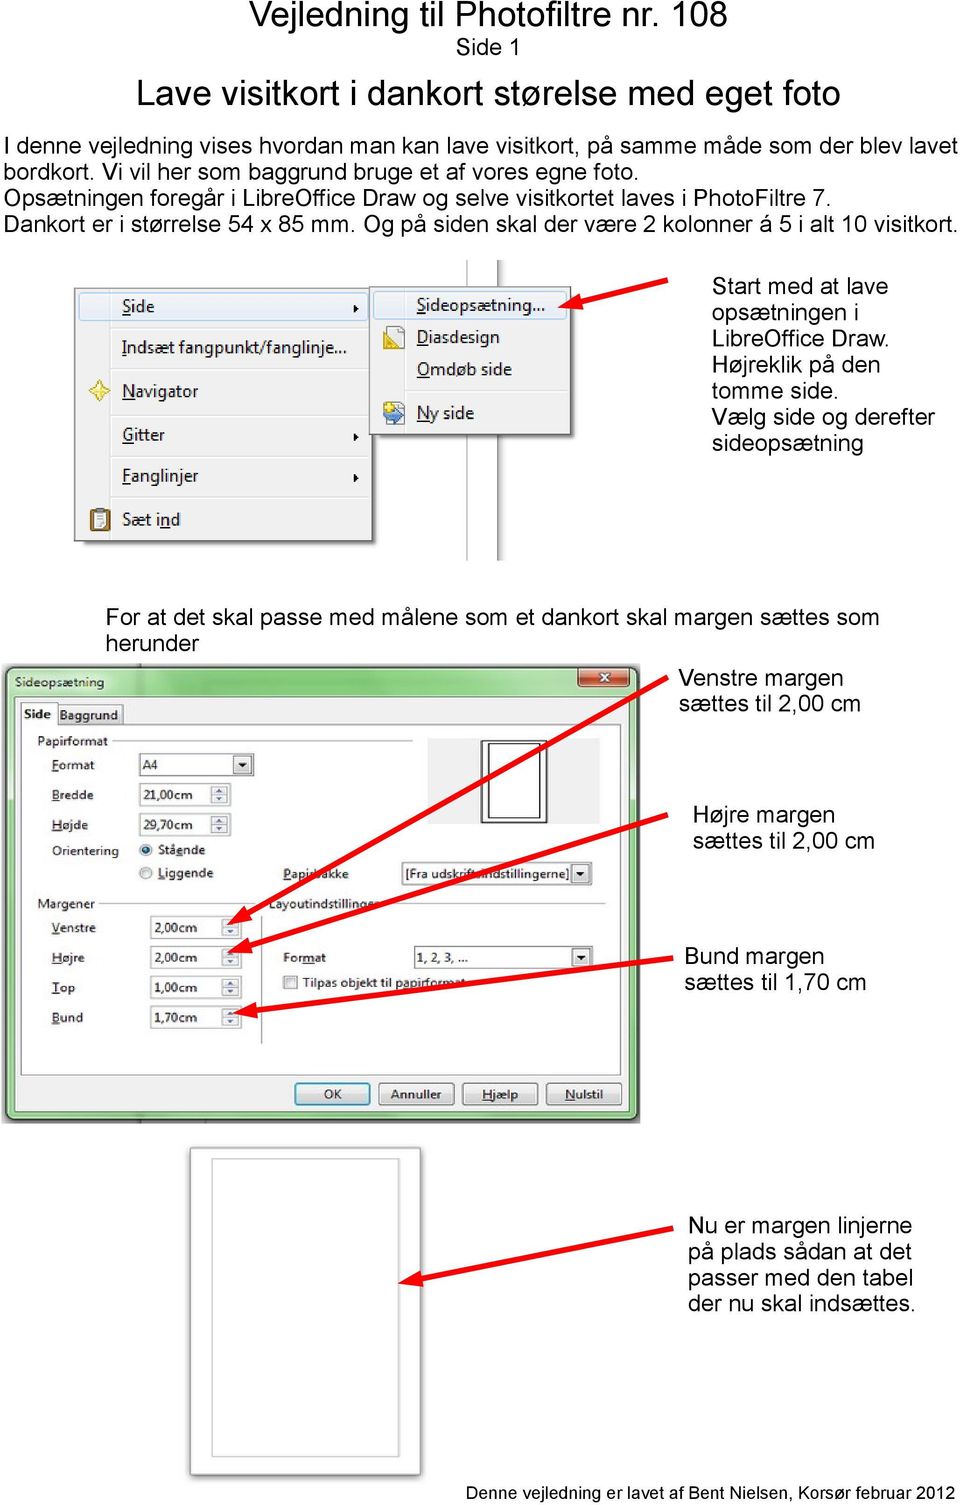 Start med at lave opsætningen i LibreOffice Draw. Højreklik på den tomme side.